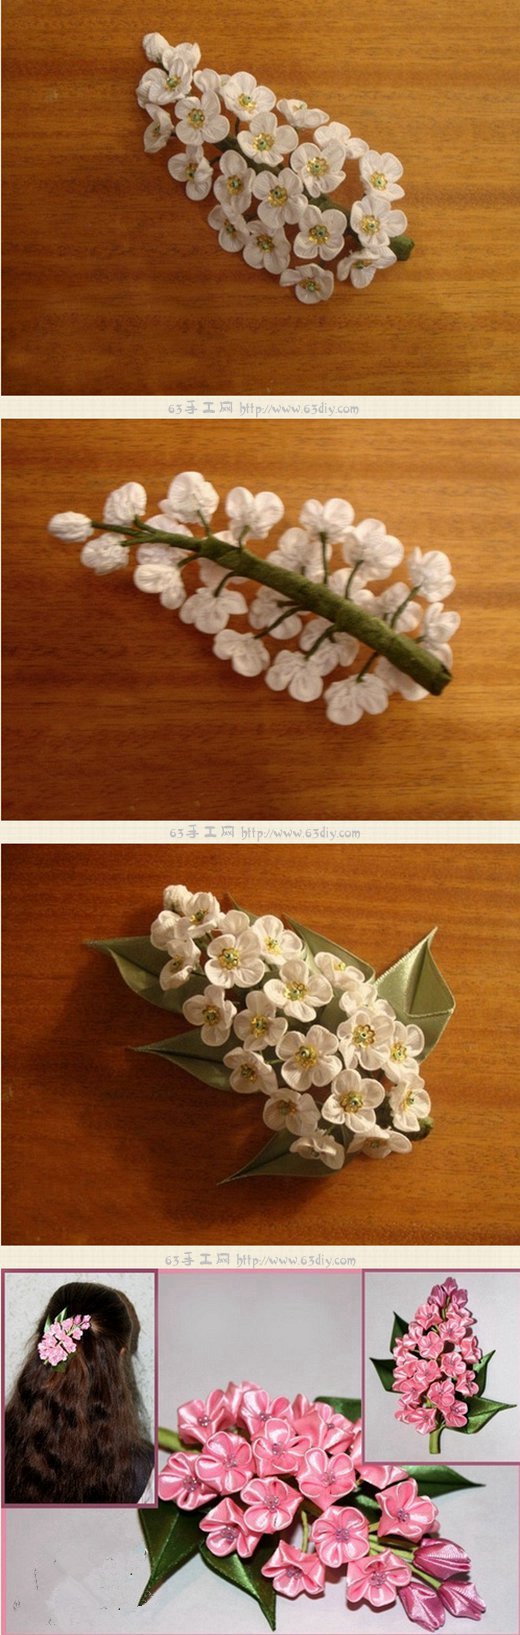 今天的布艺手工要与您分享的就是用布艺的方式来制作出一束好看的梅花